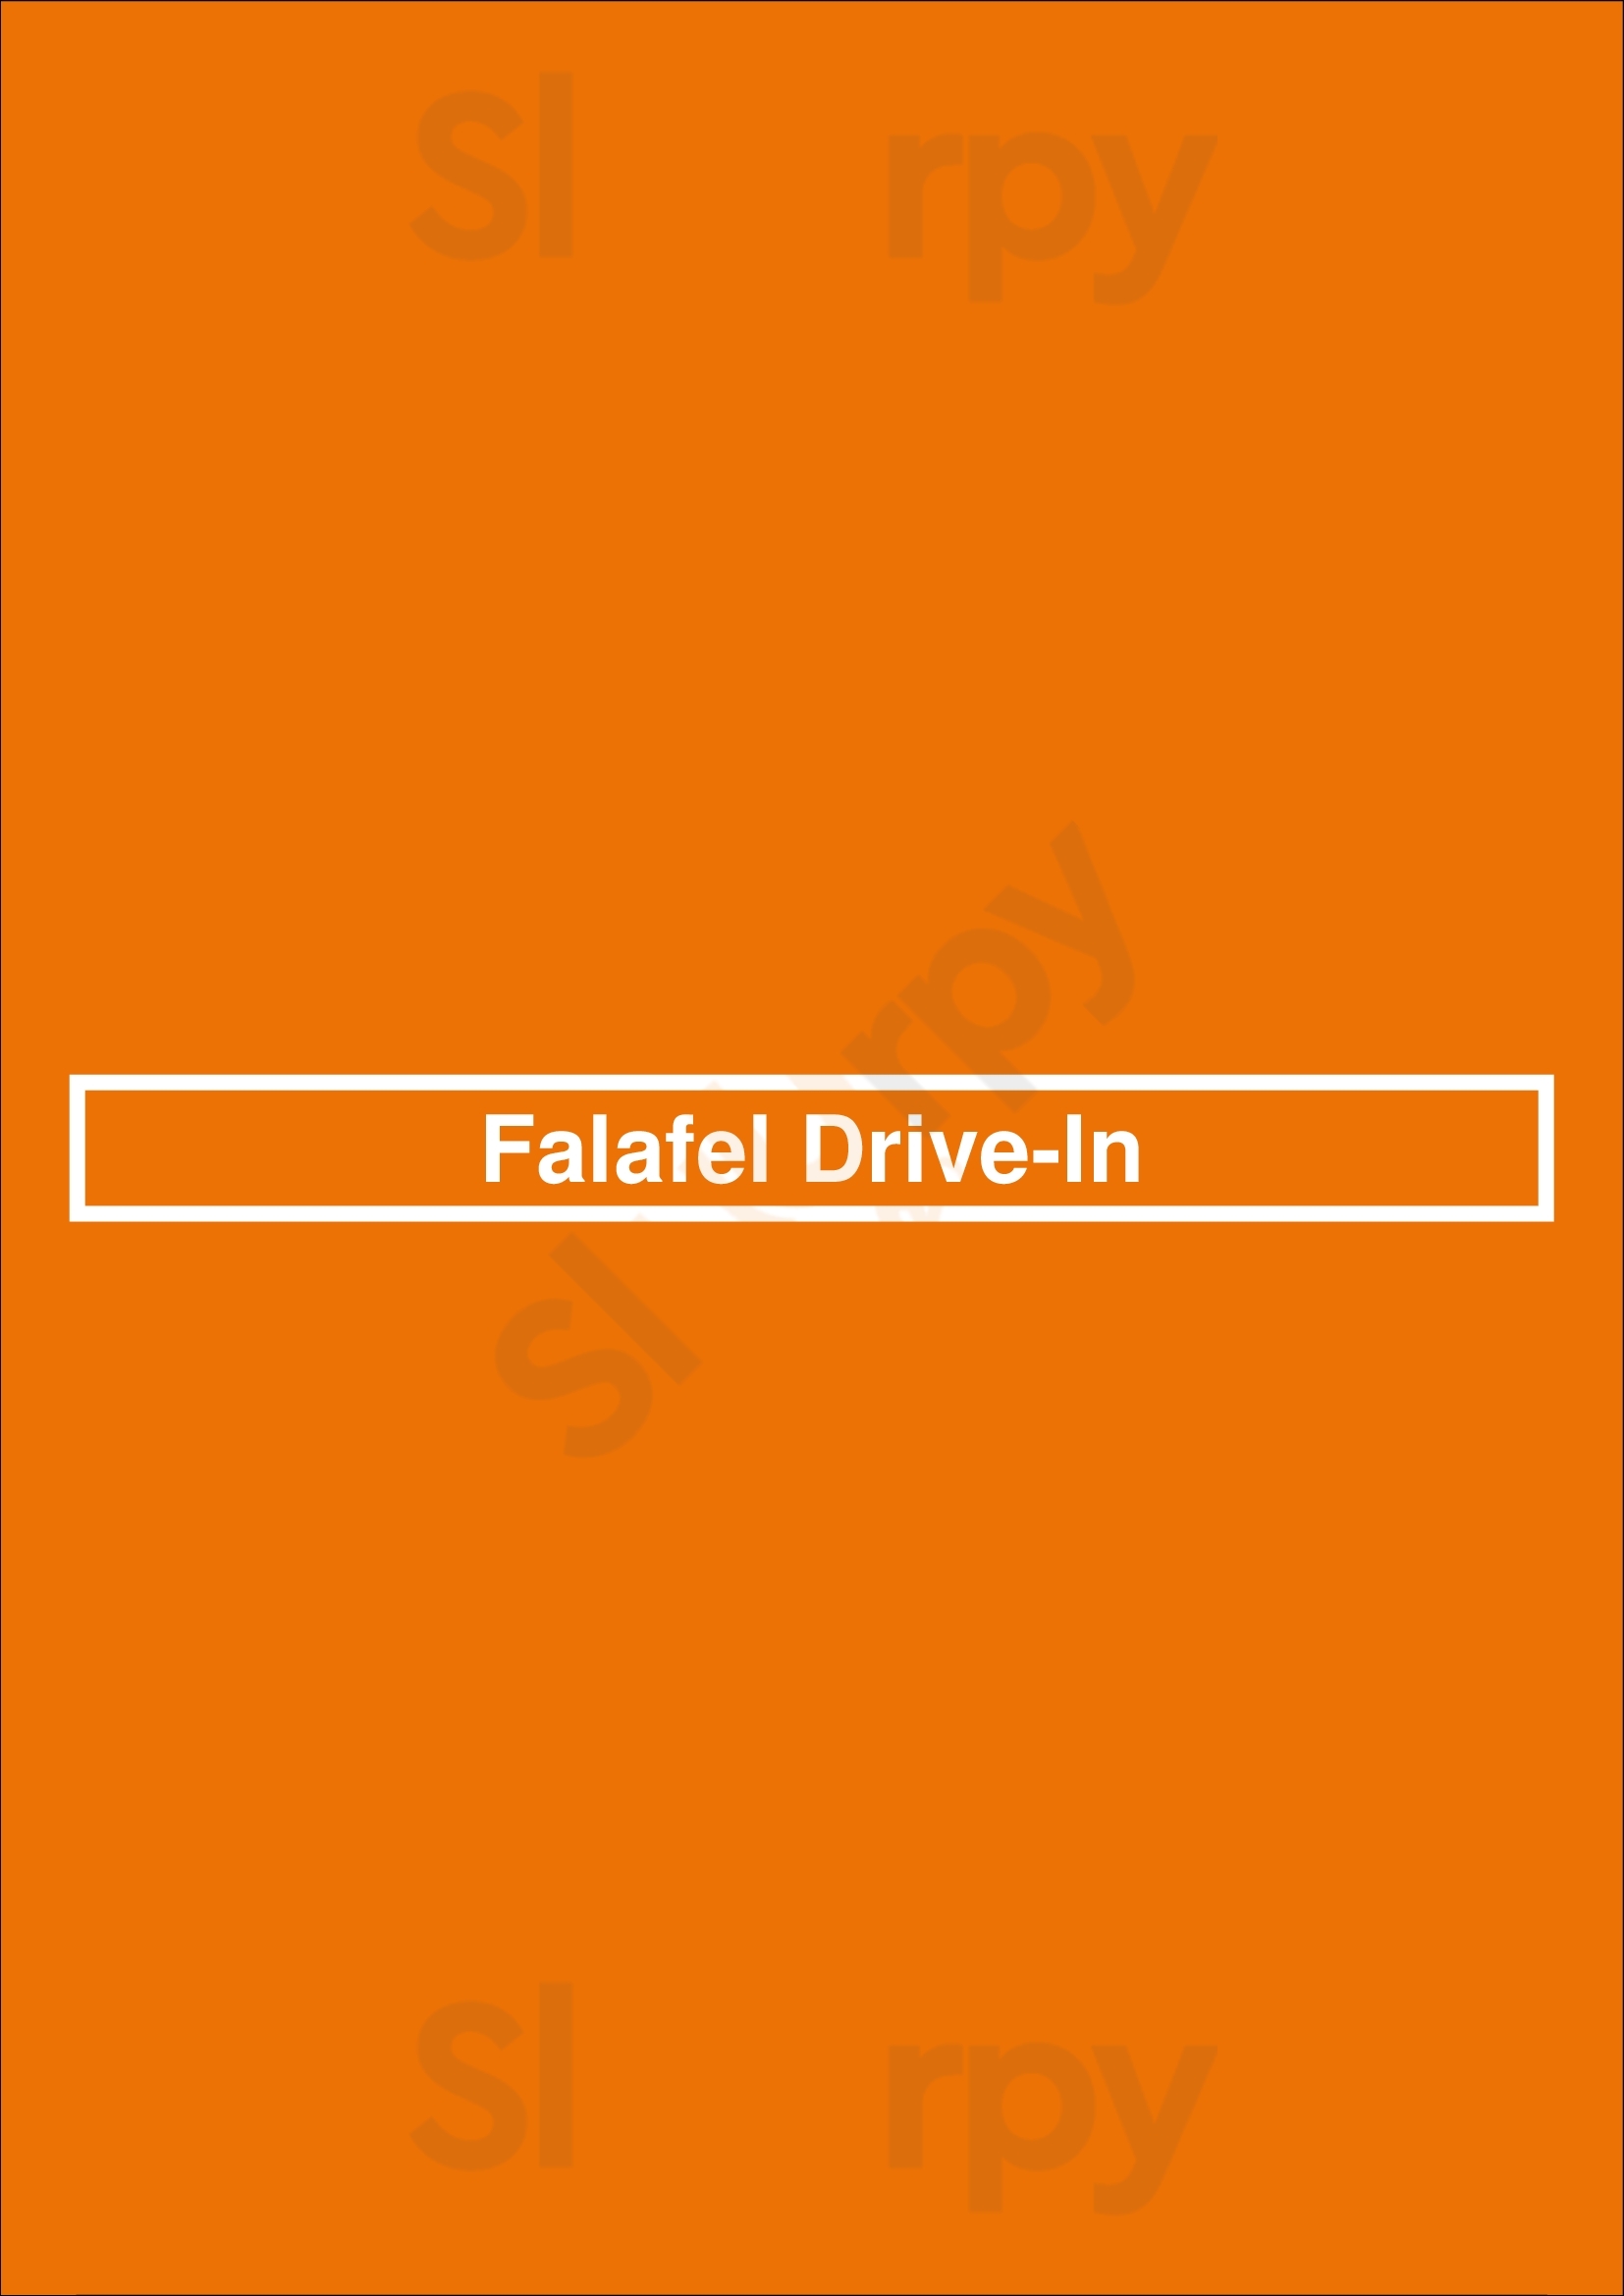 Falafel Drive In San Jose Menu - 1